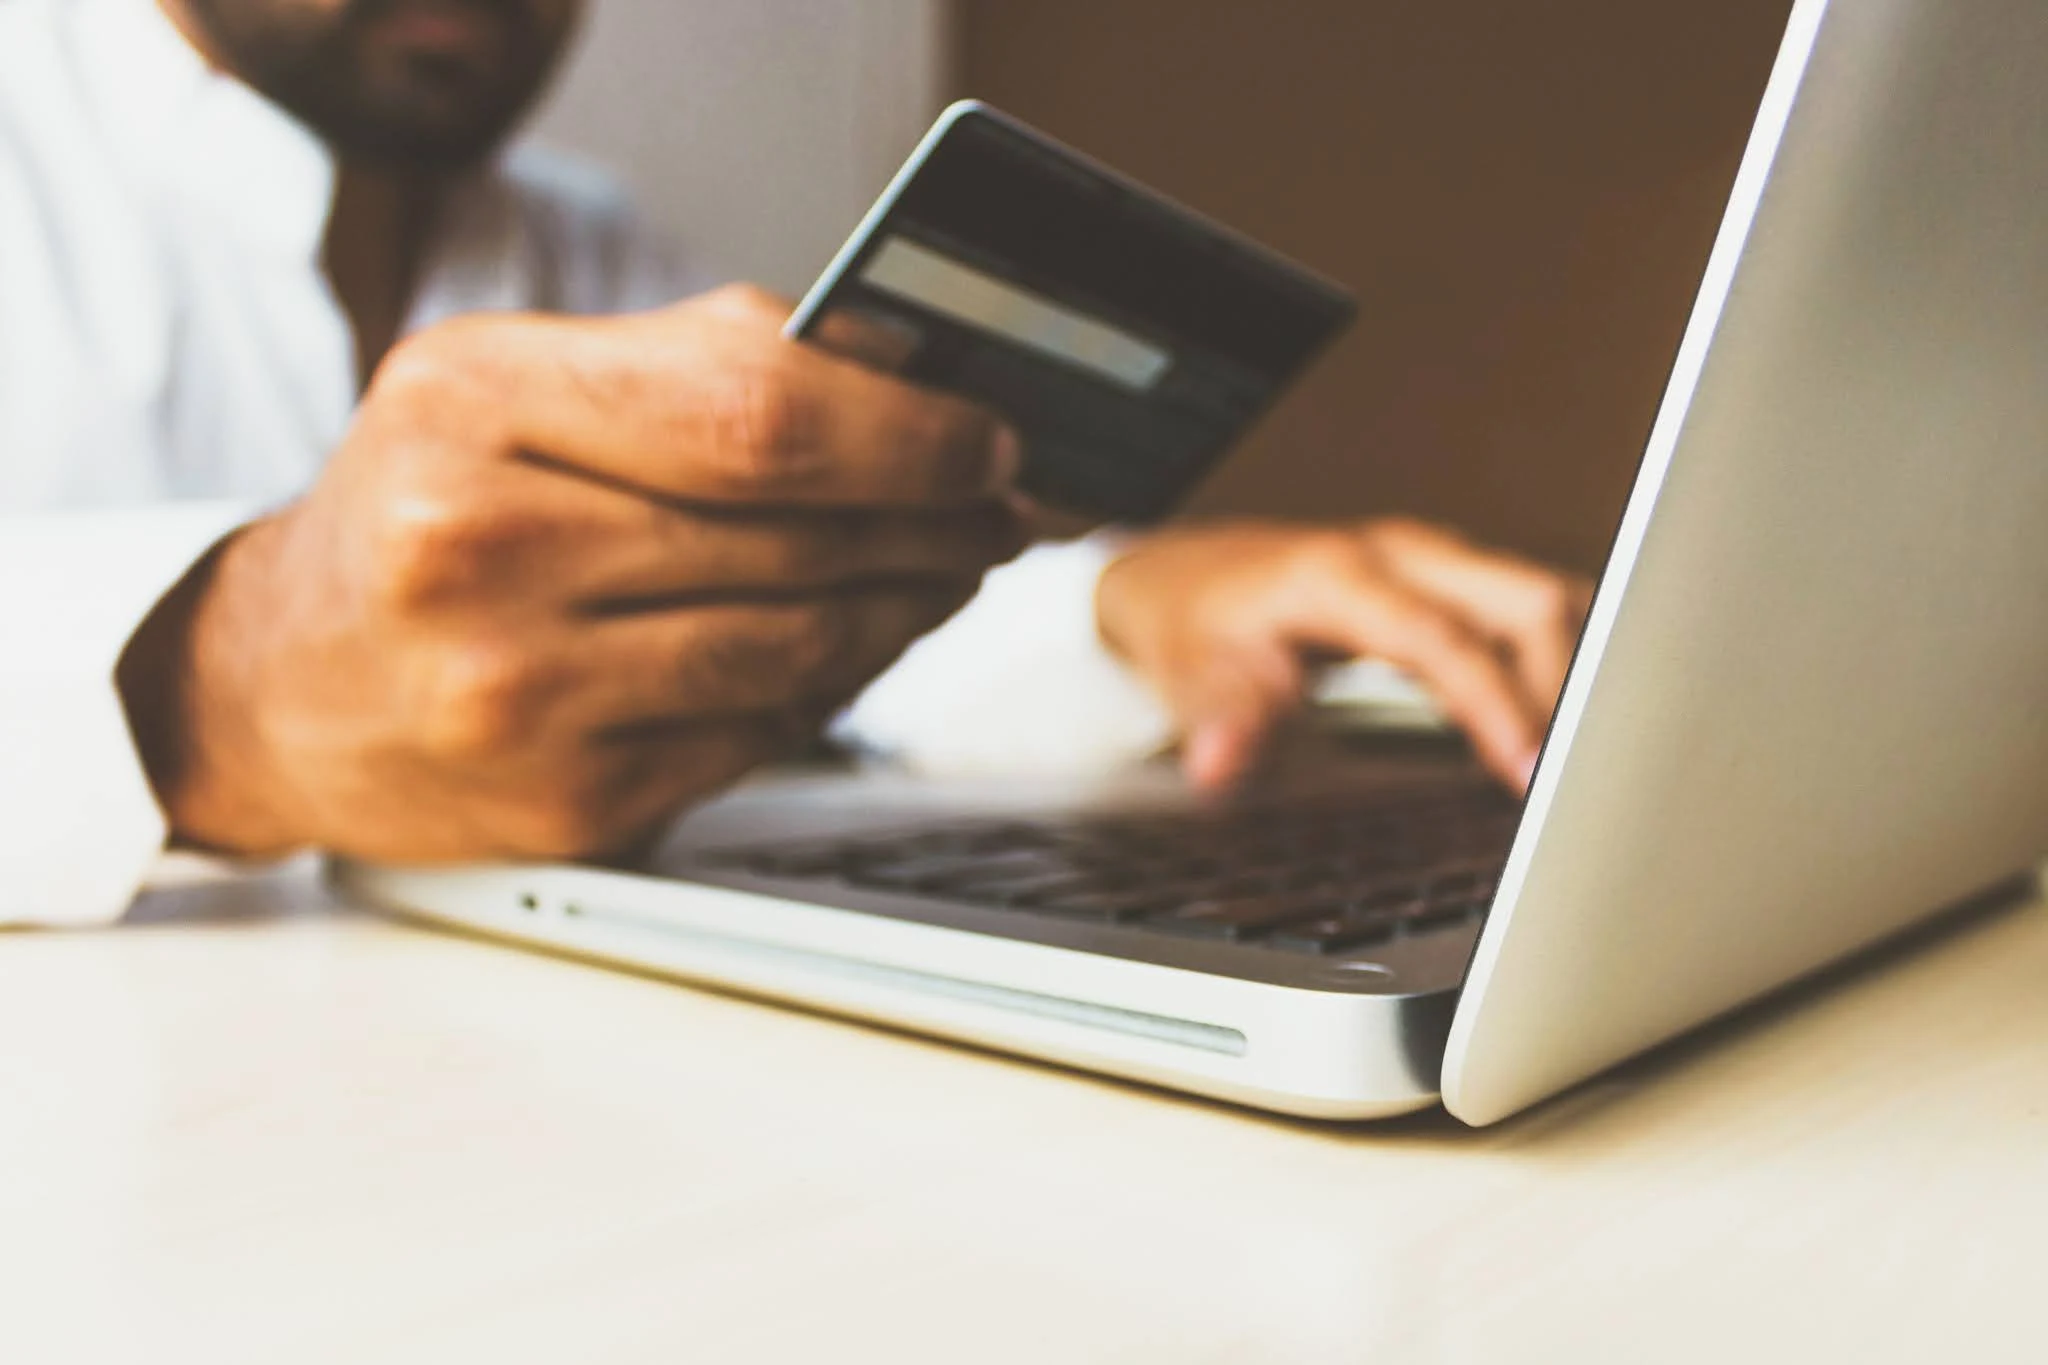 ada banyak metode pembayaran untuk bisnis kecil, seperti mobile banking, dan e-wallet. DANA, OVO, GOPAY, Google Pay, Shopee Pay merupakan contoh e-wallet yang marak digunakan.